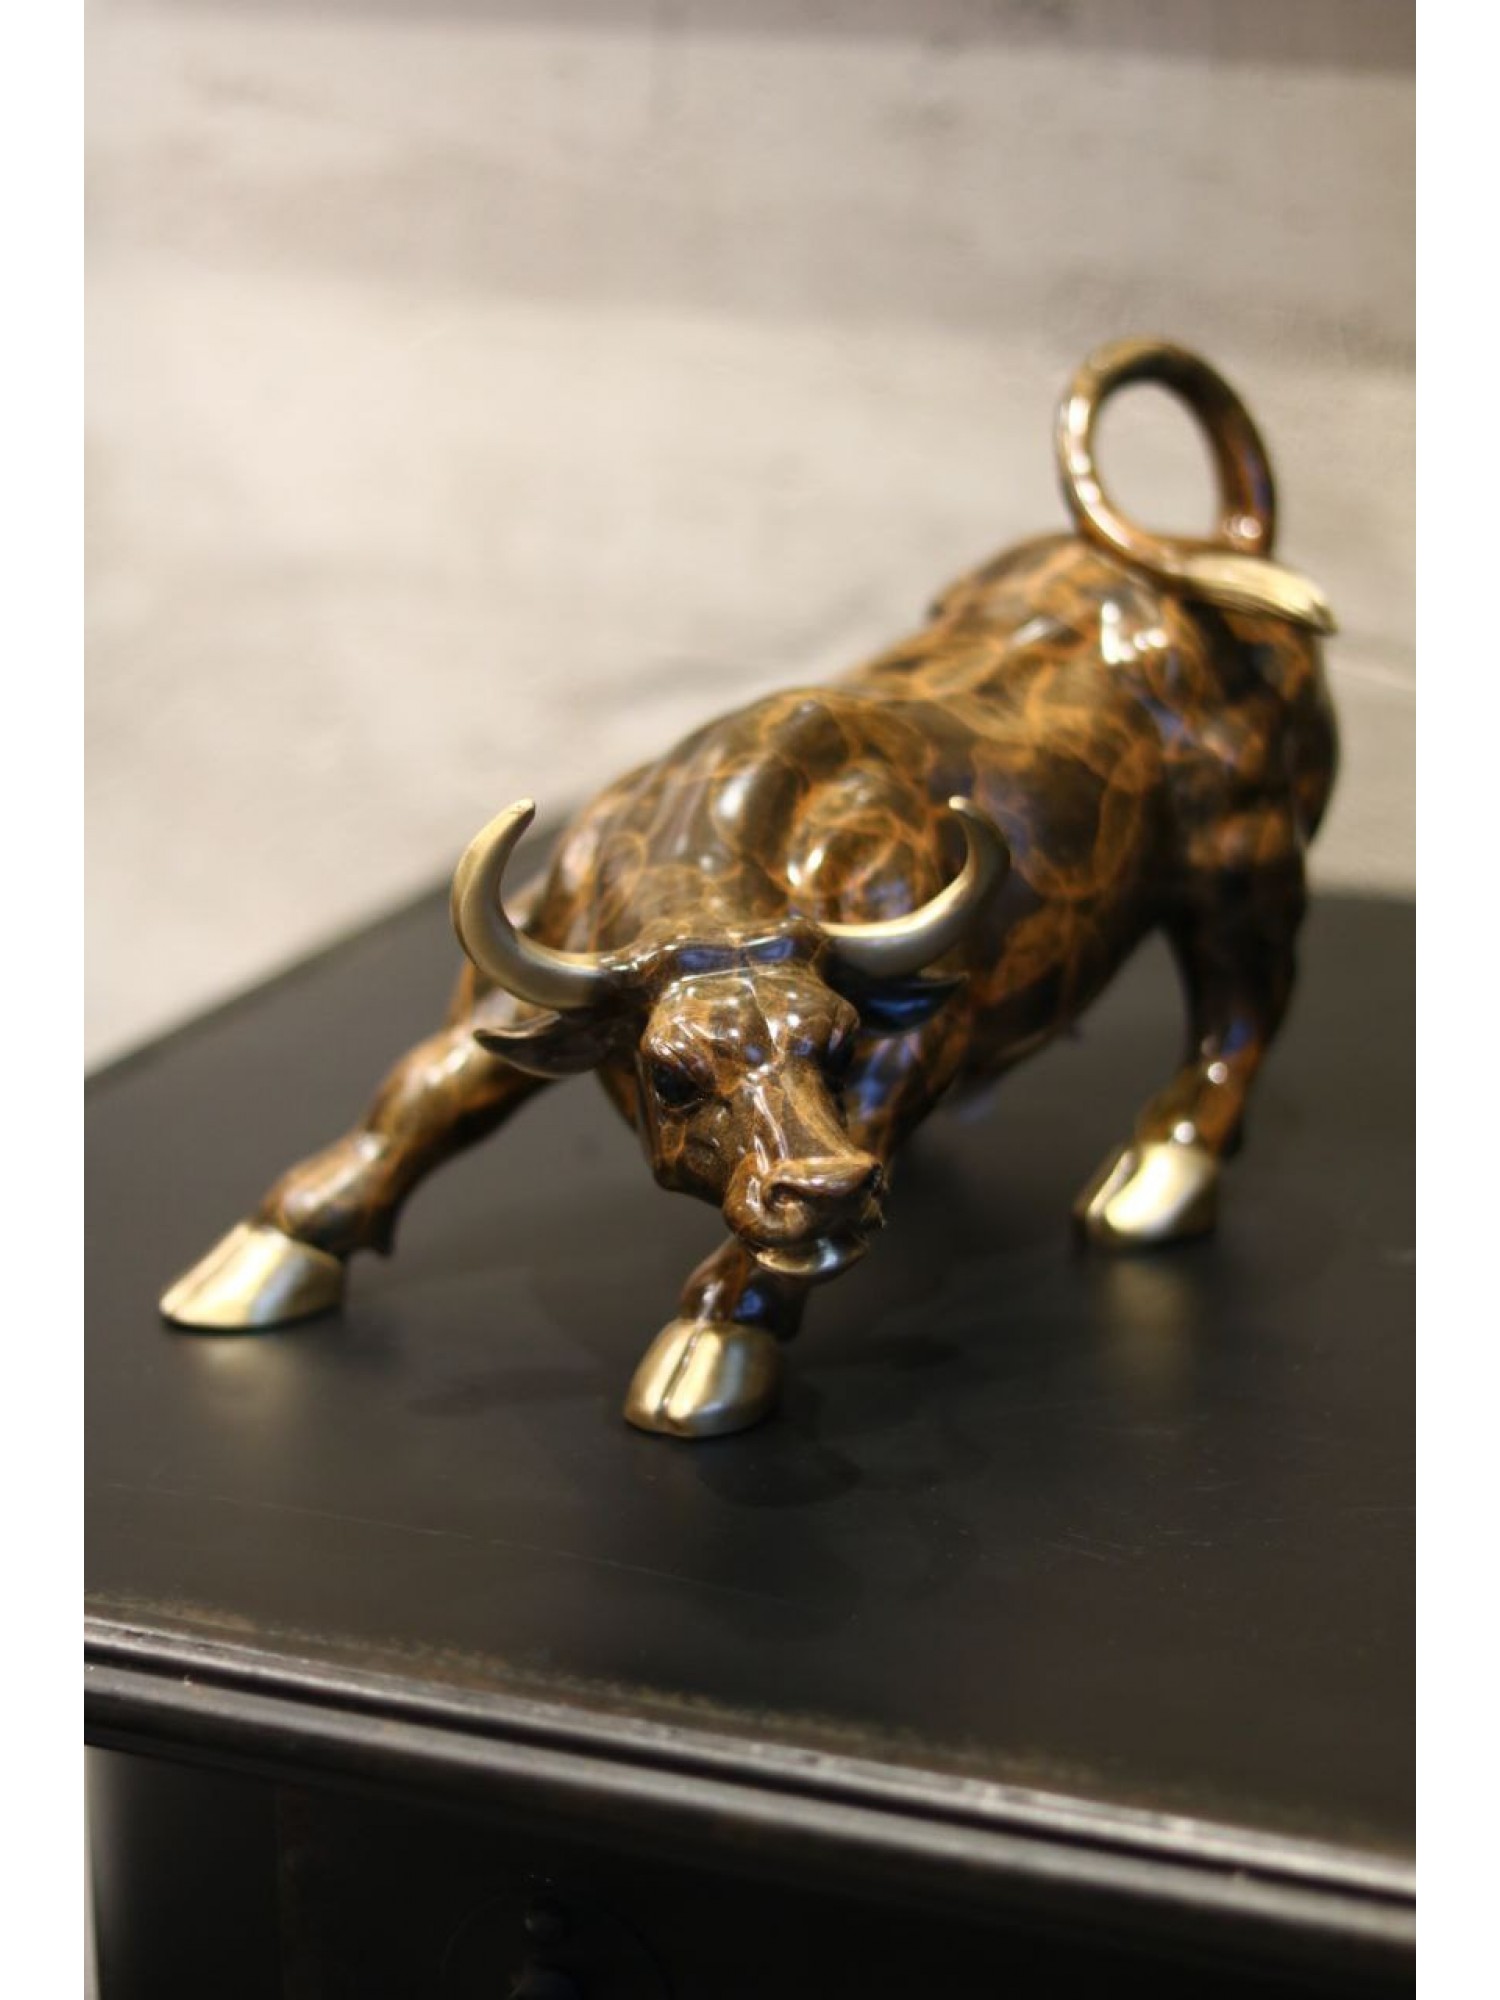 Статуэтка "Бык с золотыми рогами" из бронзы -  принесет удачу в инвестициях и успех!